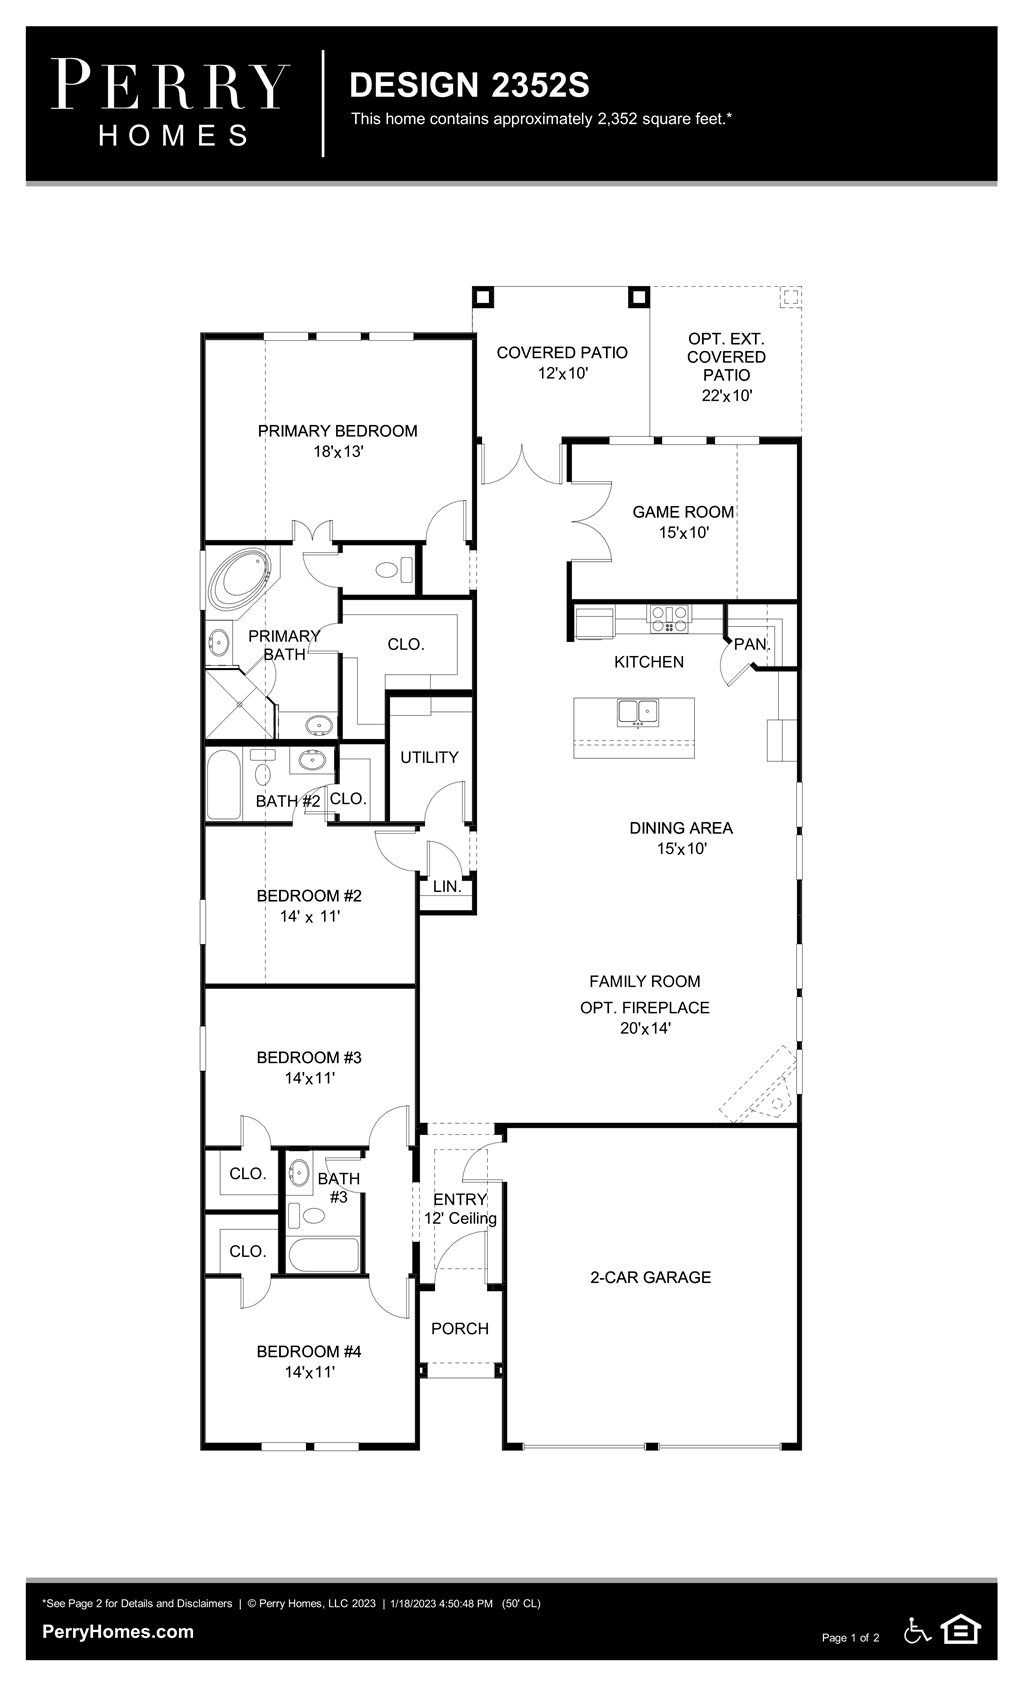 Floor Plan for 2352S